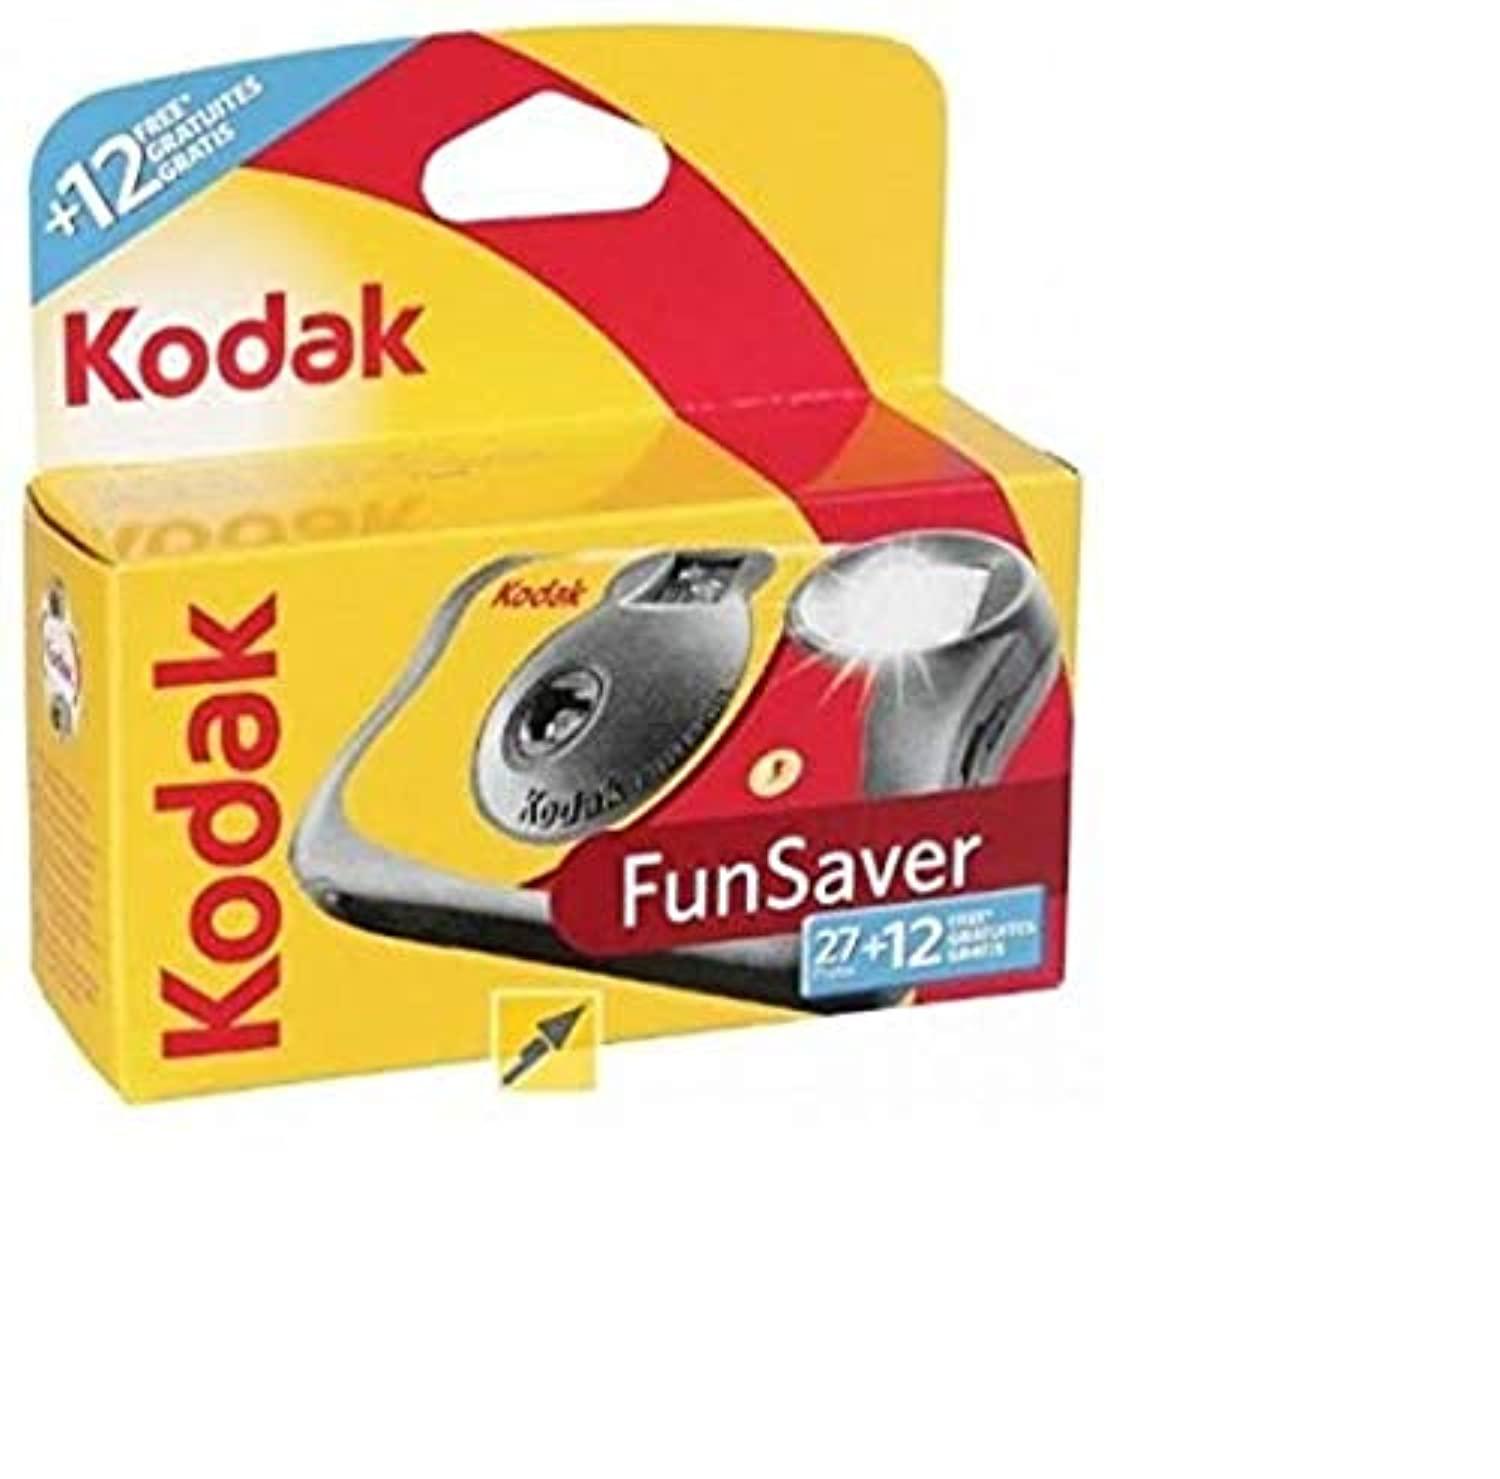 kodak 3920949 fun saver single use camera with flash (yellow/red)